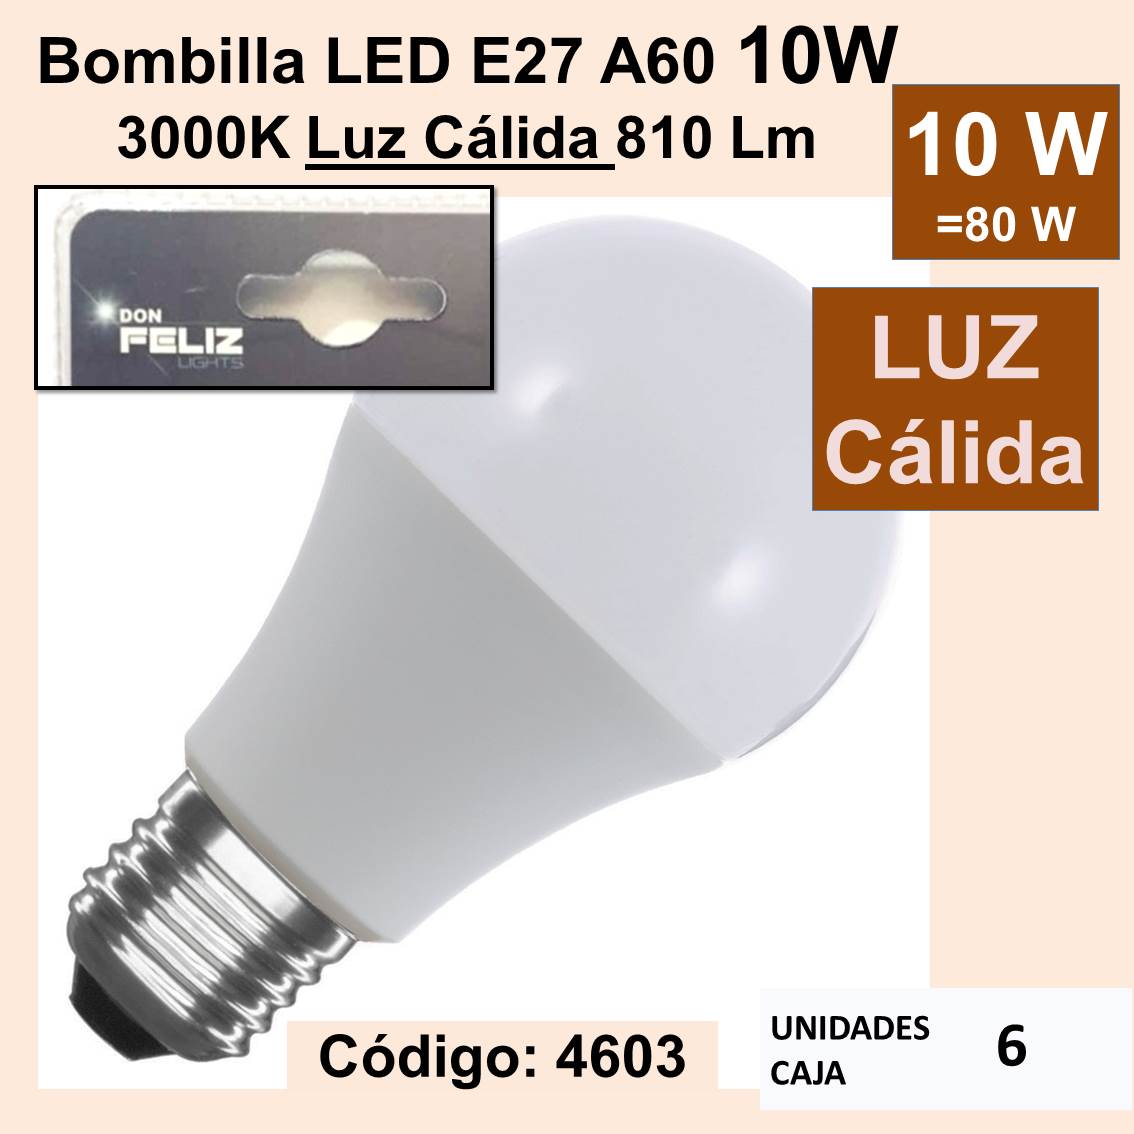 Bombilla LED E27 A60 10Watios 3000K Luz Cálida 810 Lm DON FELIZ